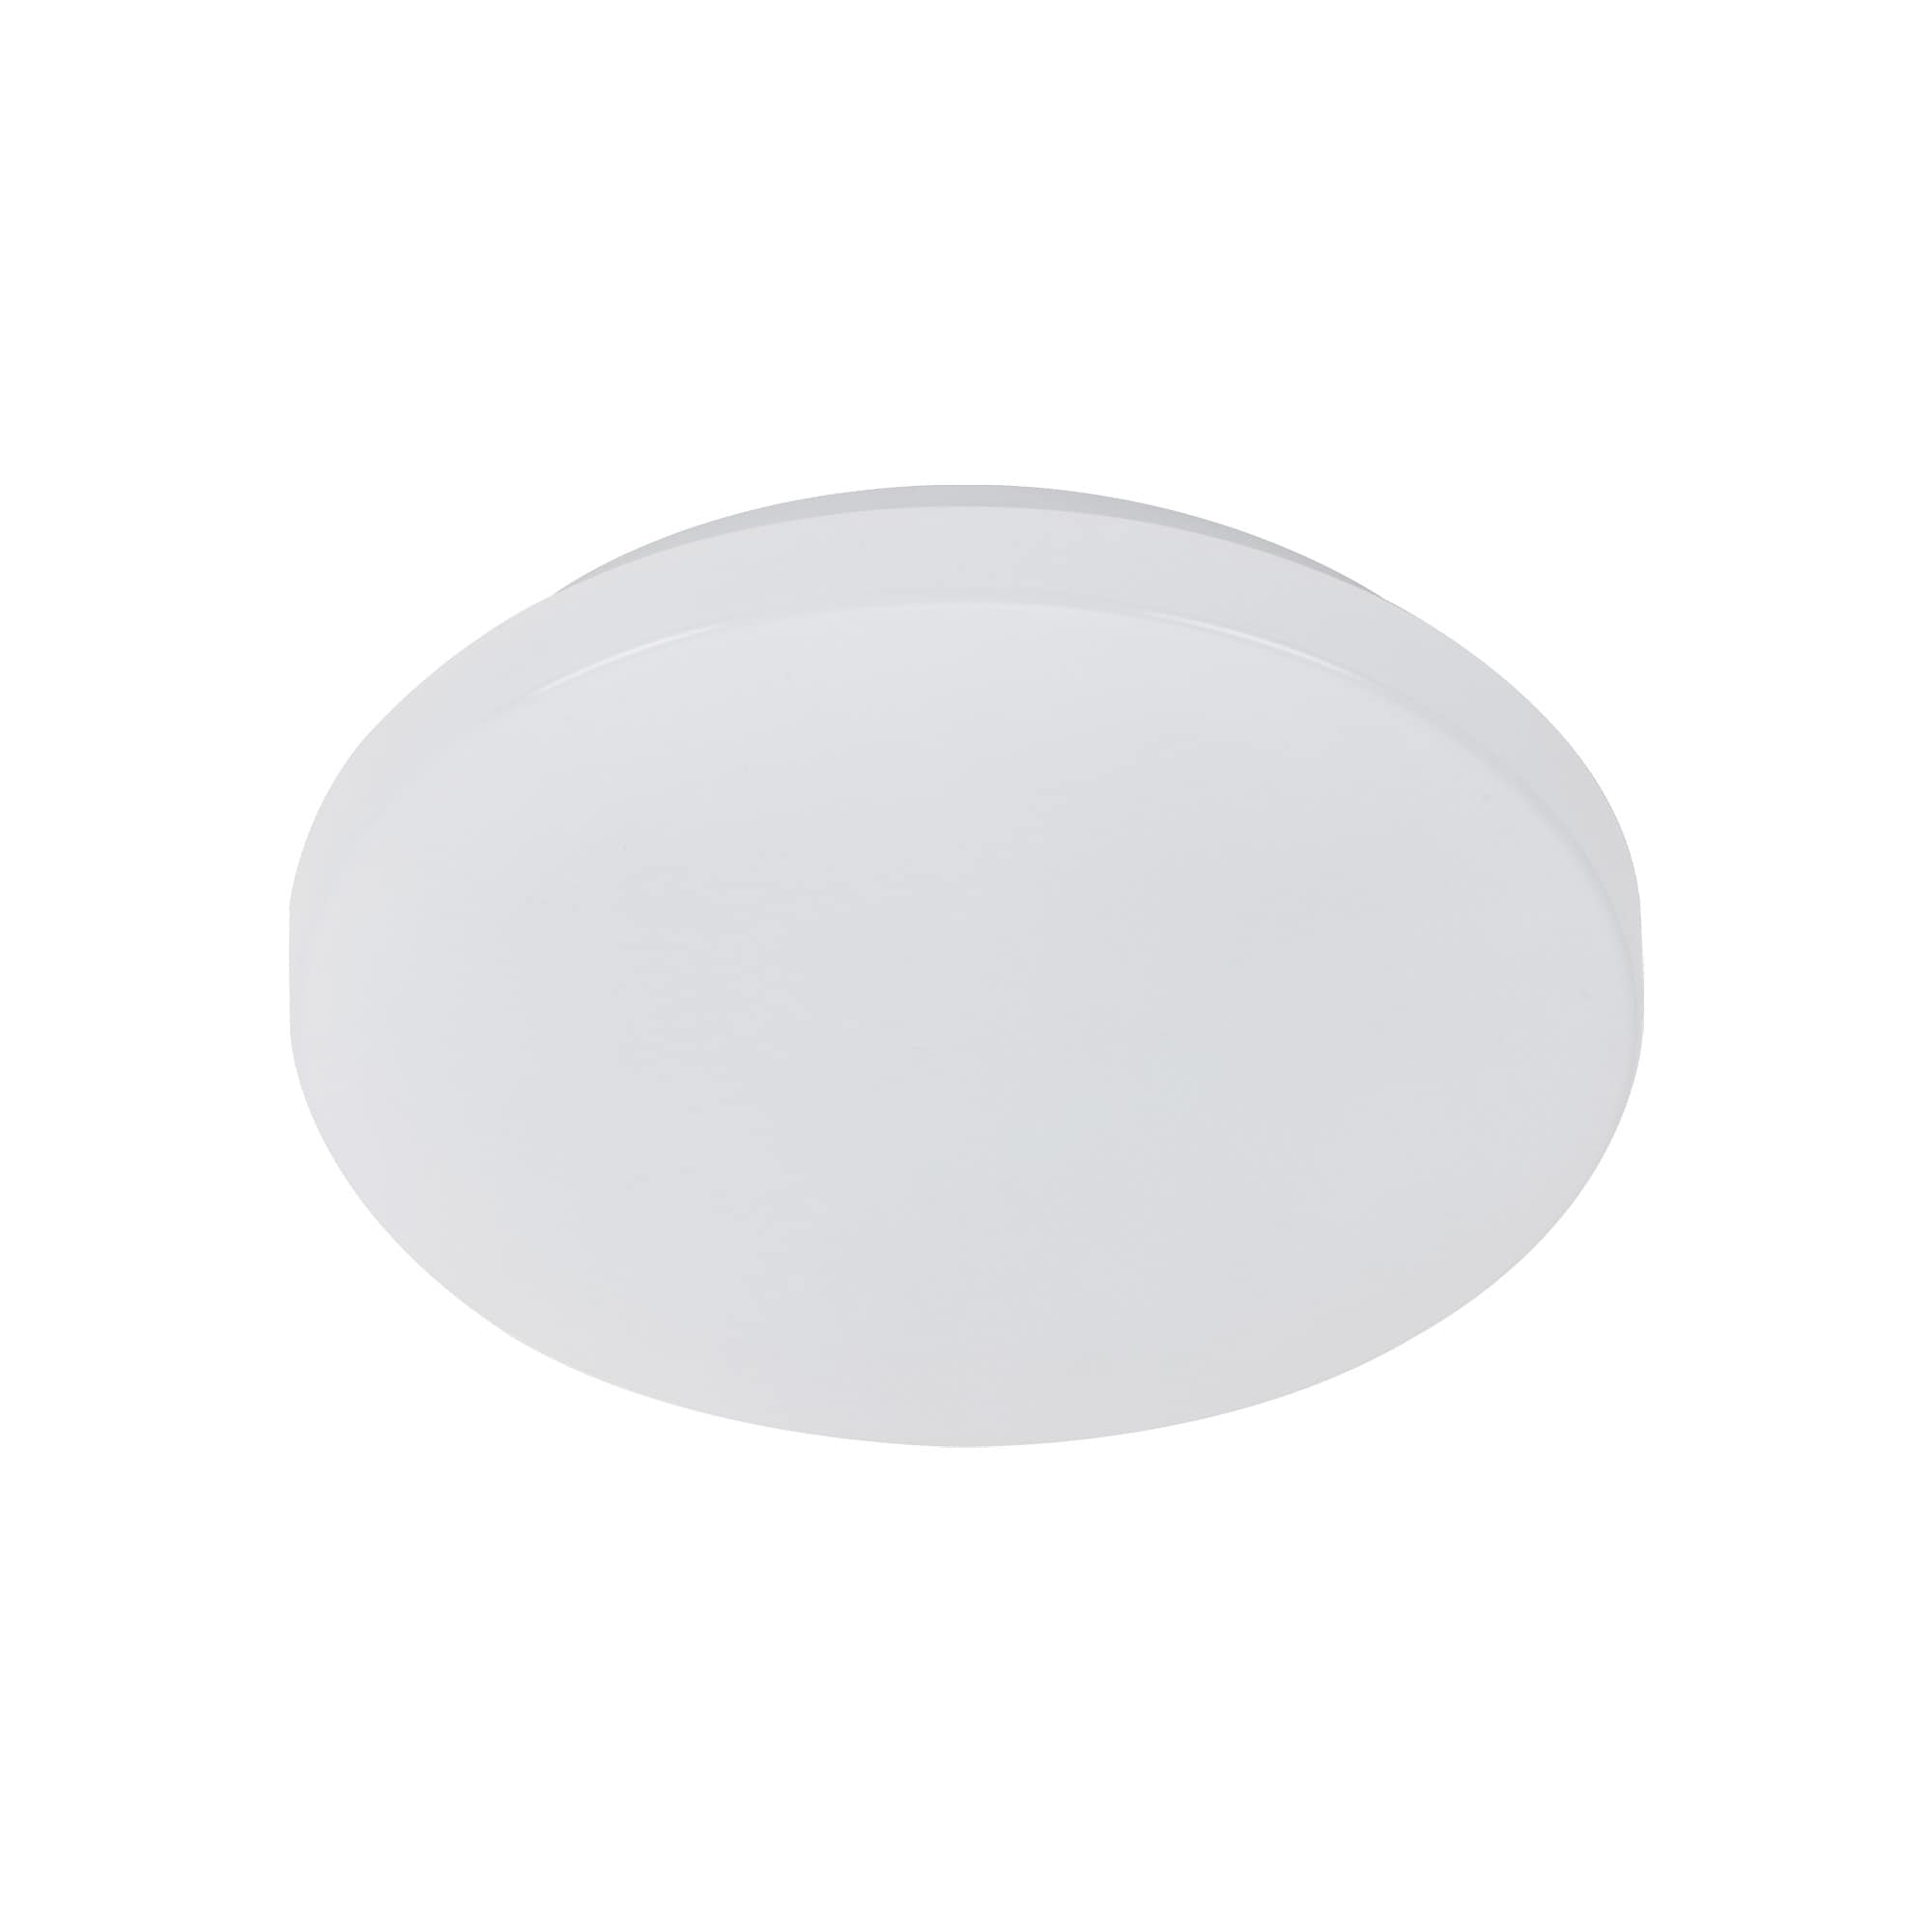 LED Deckenleuchte Bad rund IP 44 - 29x6,6cm - Deckenlampe mit Bewegungsmelder 12W 1200lm 4000K neutralweißes Licht | weiß - 7